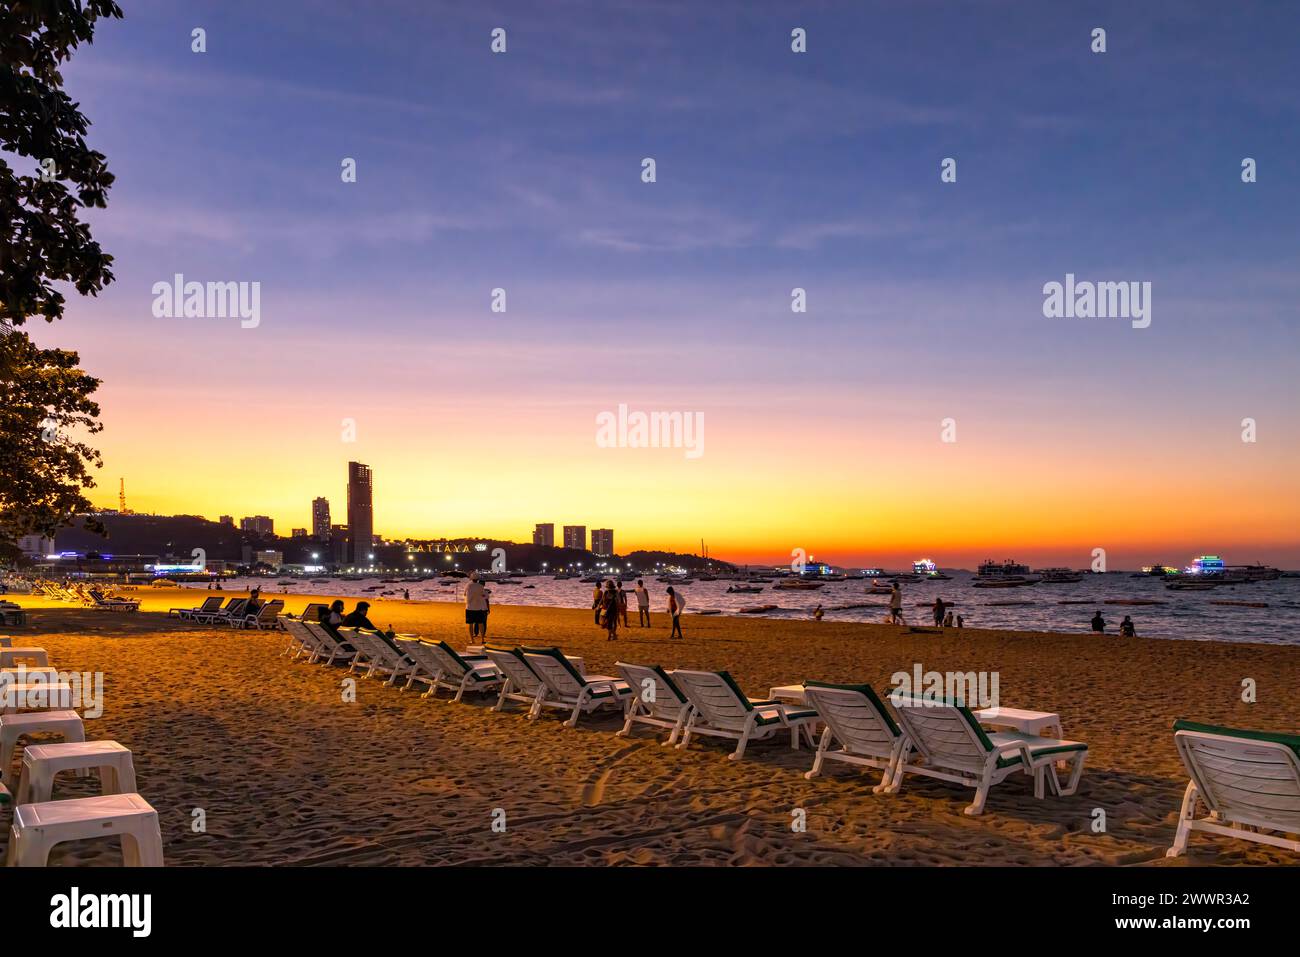 Paysage de plage de Pattaya avec sable, chaises longues, bâtiments, personnes et horizon au coucher du soleil, Thaïlande Banque D'Images